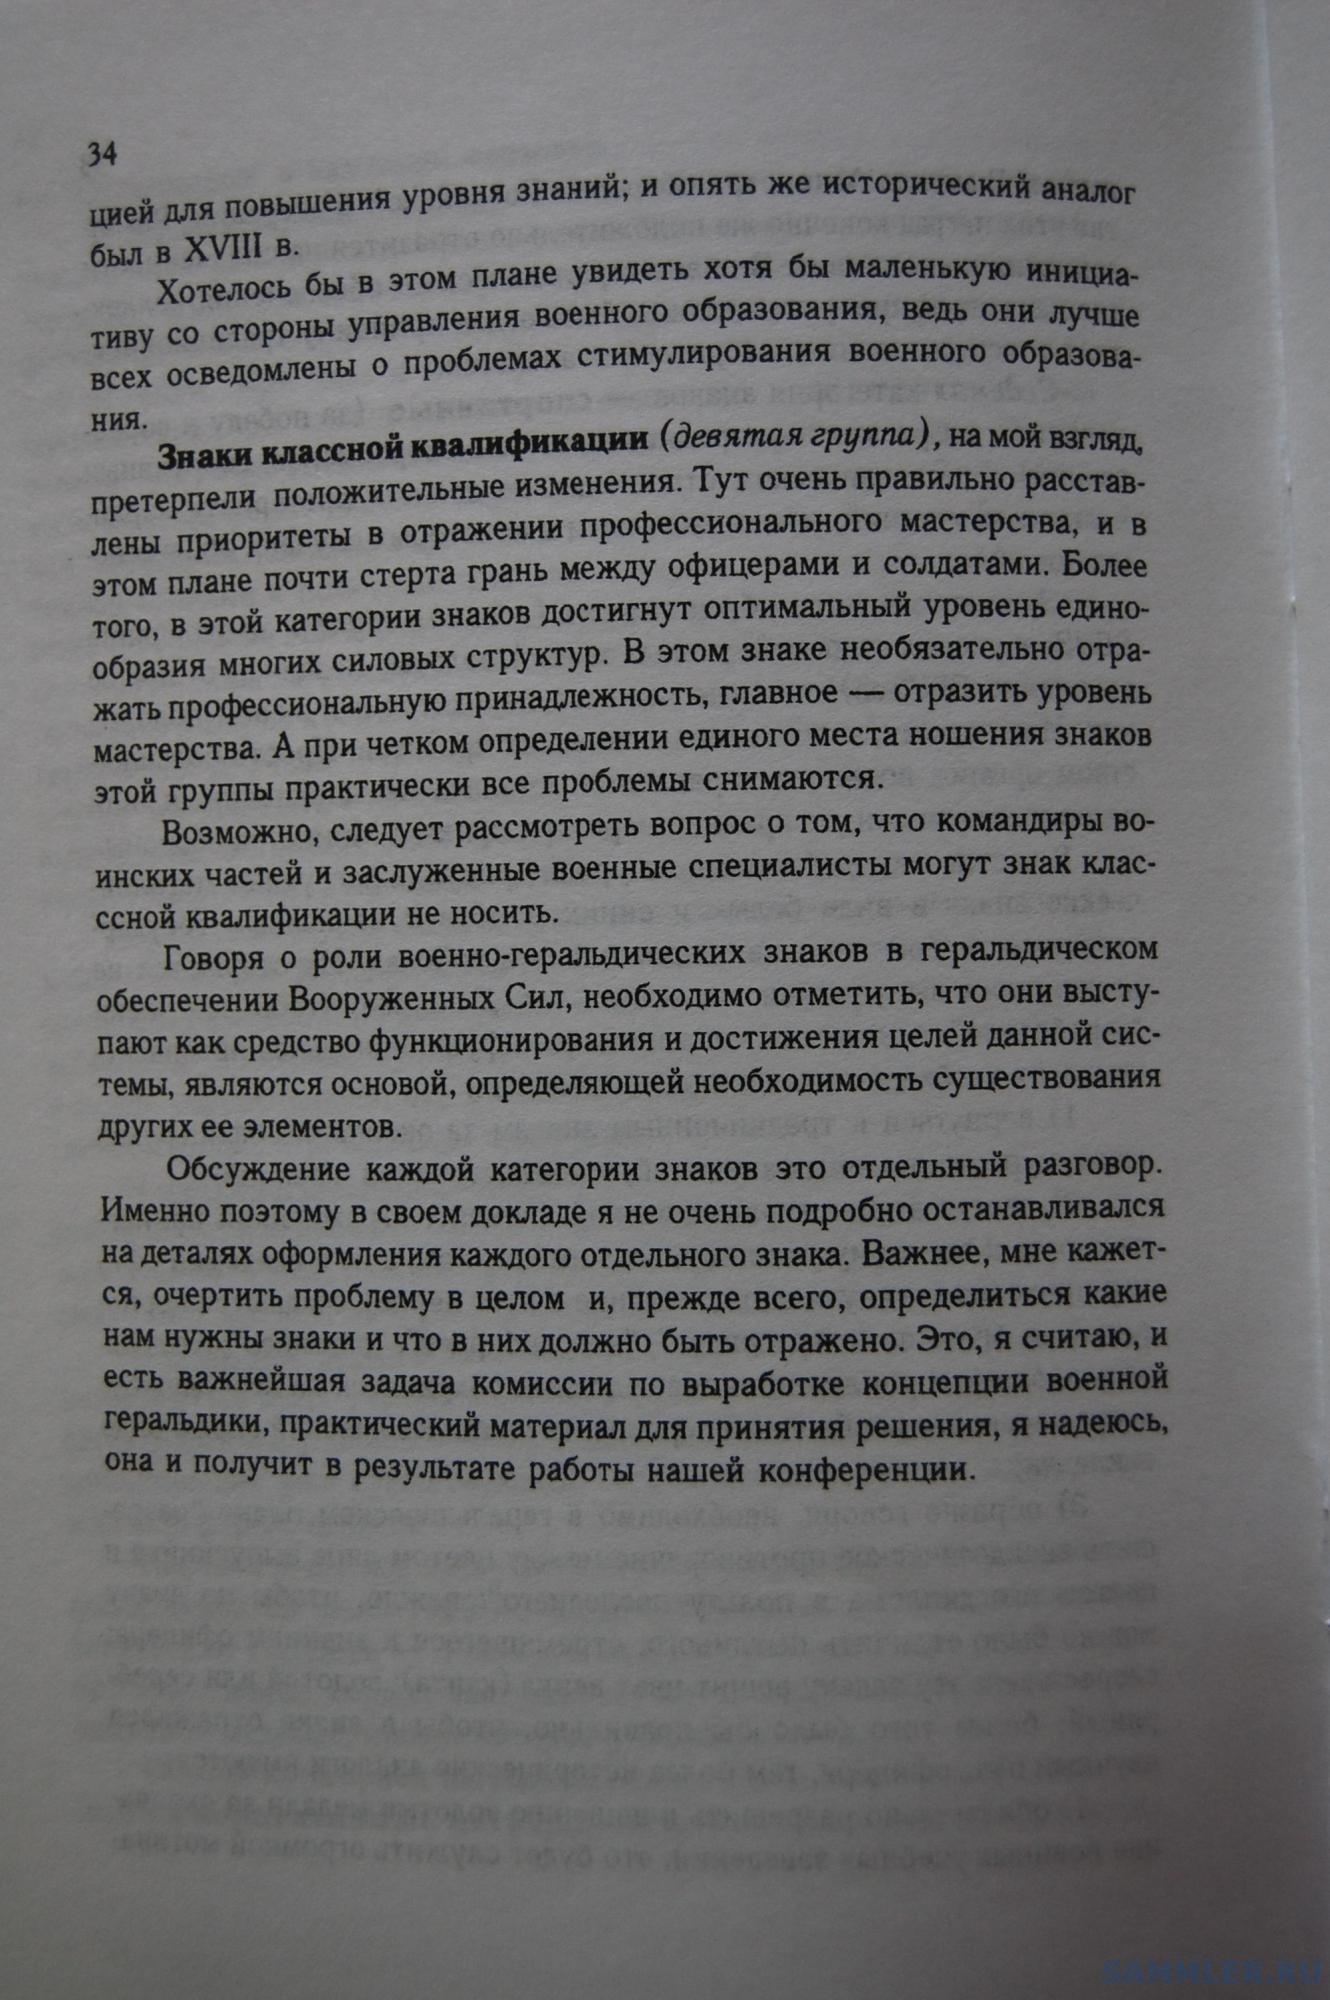 Кузнецов О.В. - Геральдическое обеспечение ВС РФ. М., 1999. С. 34.JPG